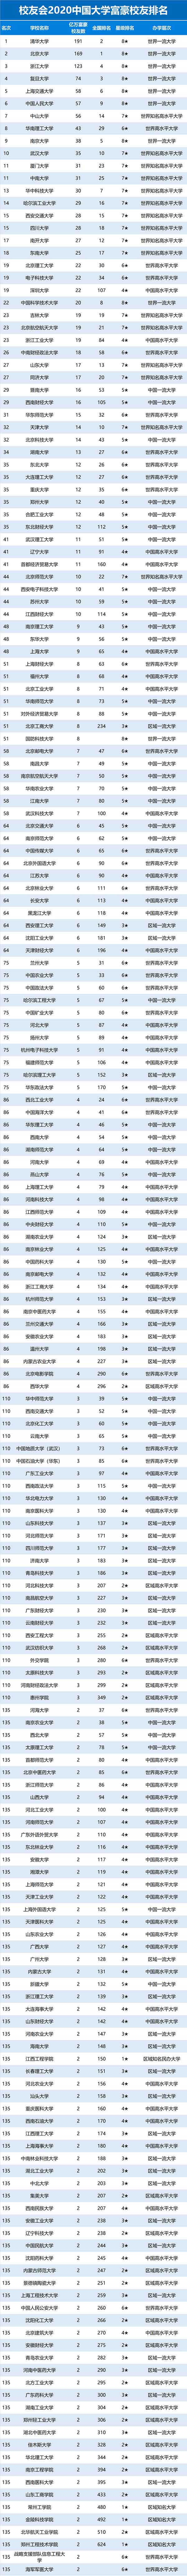 2020中国大学富豪校友排名.jpg